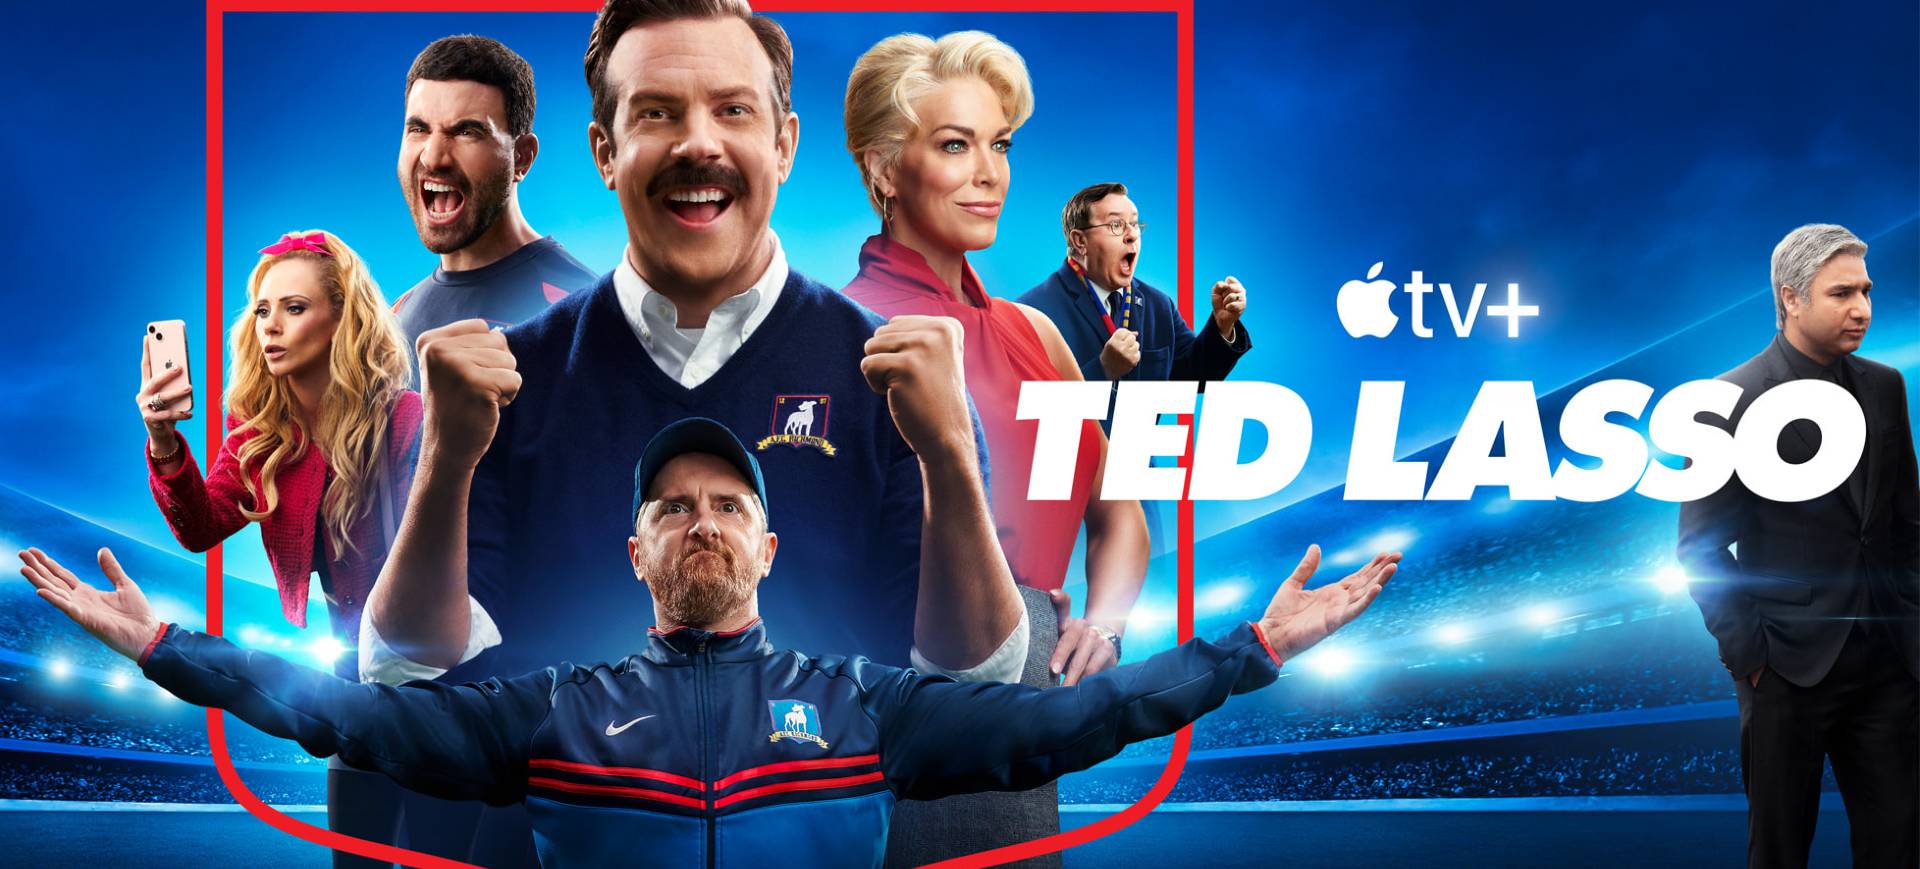 Imagem da série Ted Lasso, da Apple TV+, mostra alguns dos atores do elenvo principal em um pôster de fundo azul; ao lado está o texto TED LASSO e o logo da Apple TV+